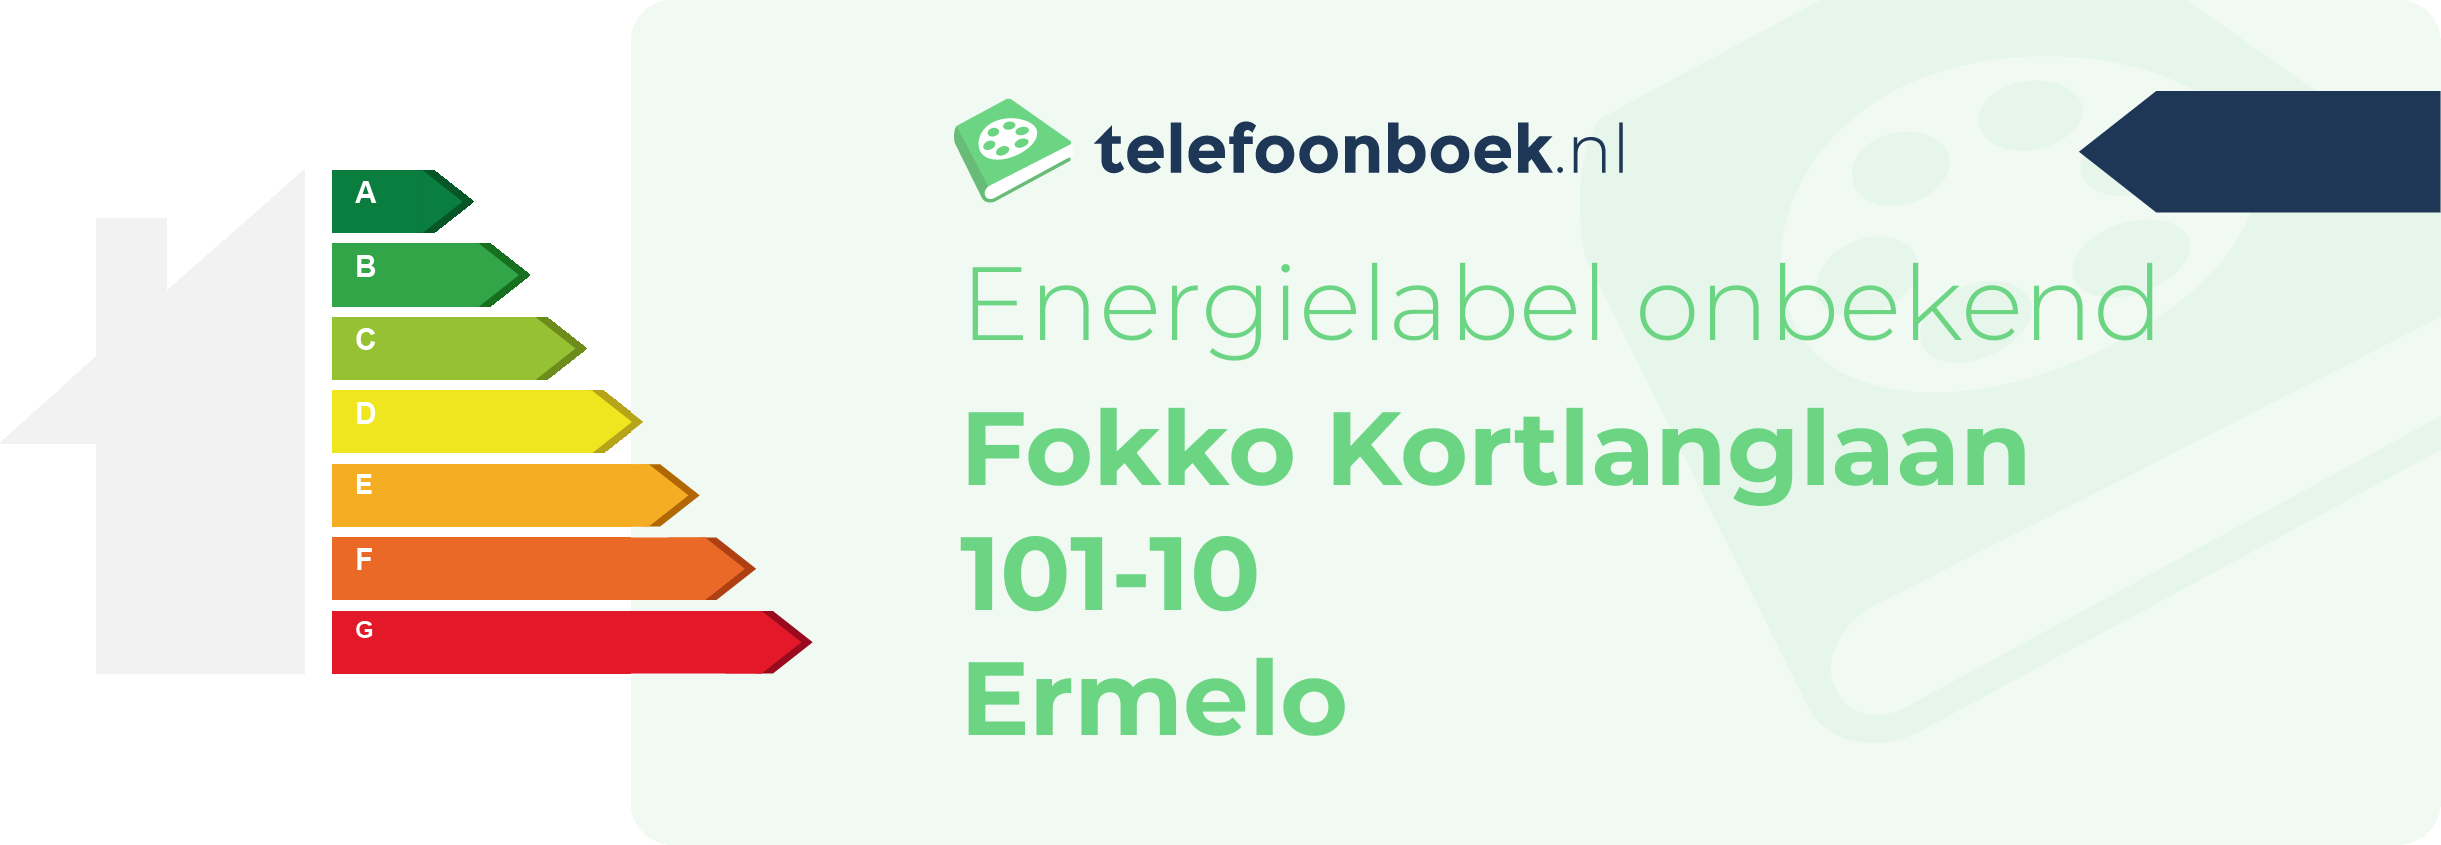 Energielabel Fokko Kortlanglaan 101-10 Ermelo